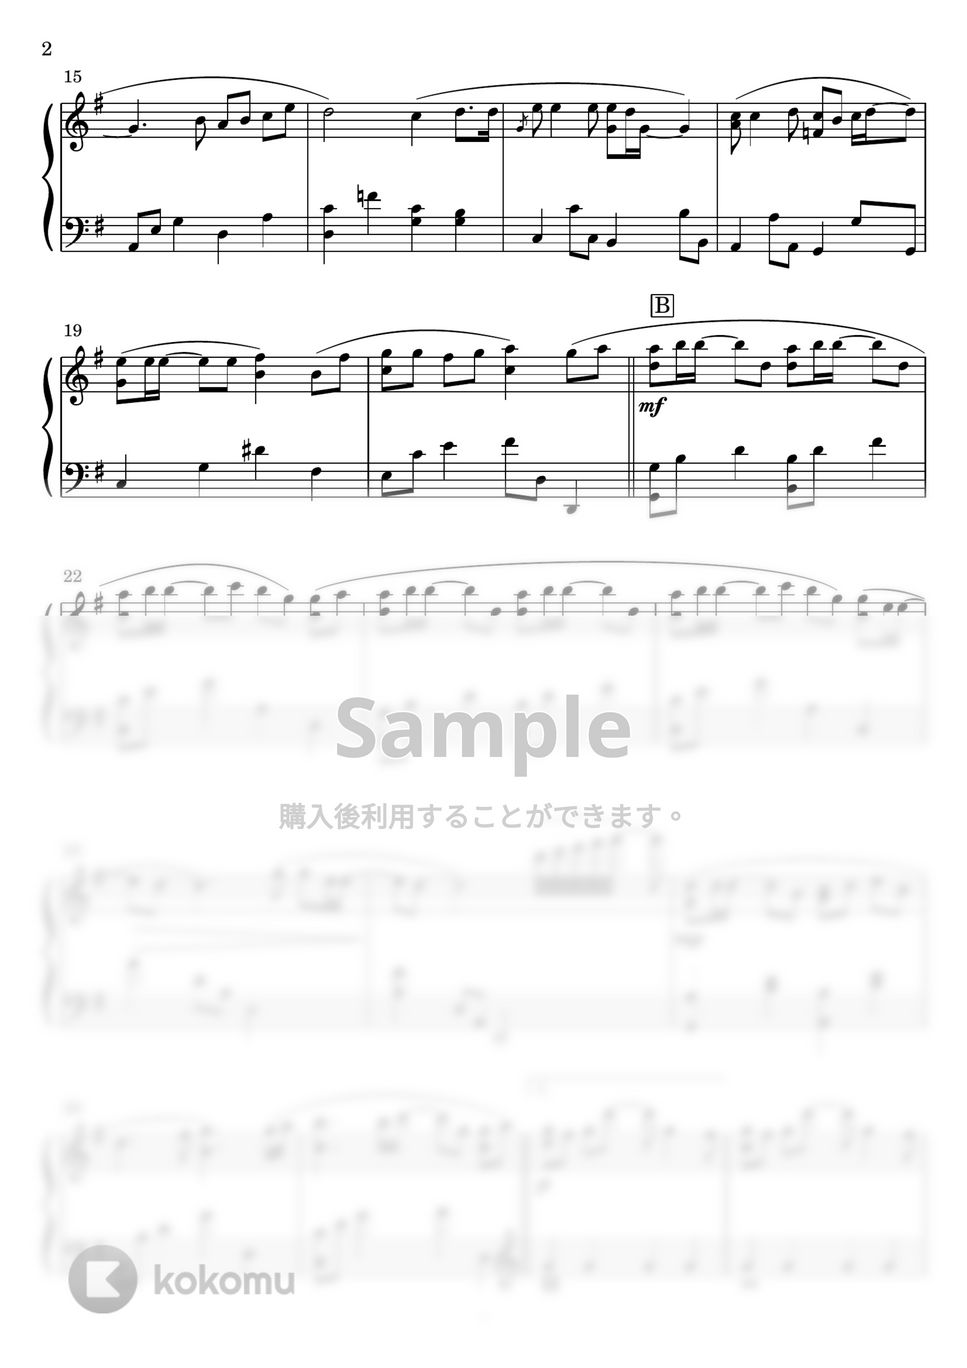 松田聖子 - 赤いスイートピー (ピアノソロ) by Miz